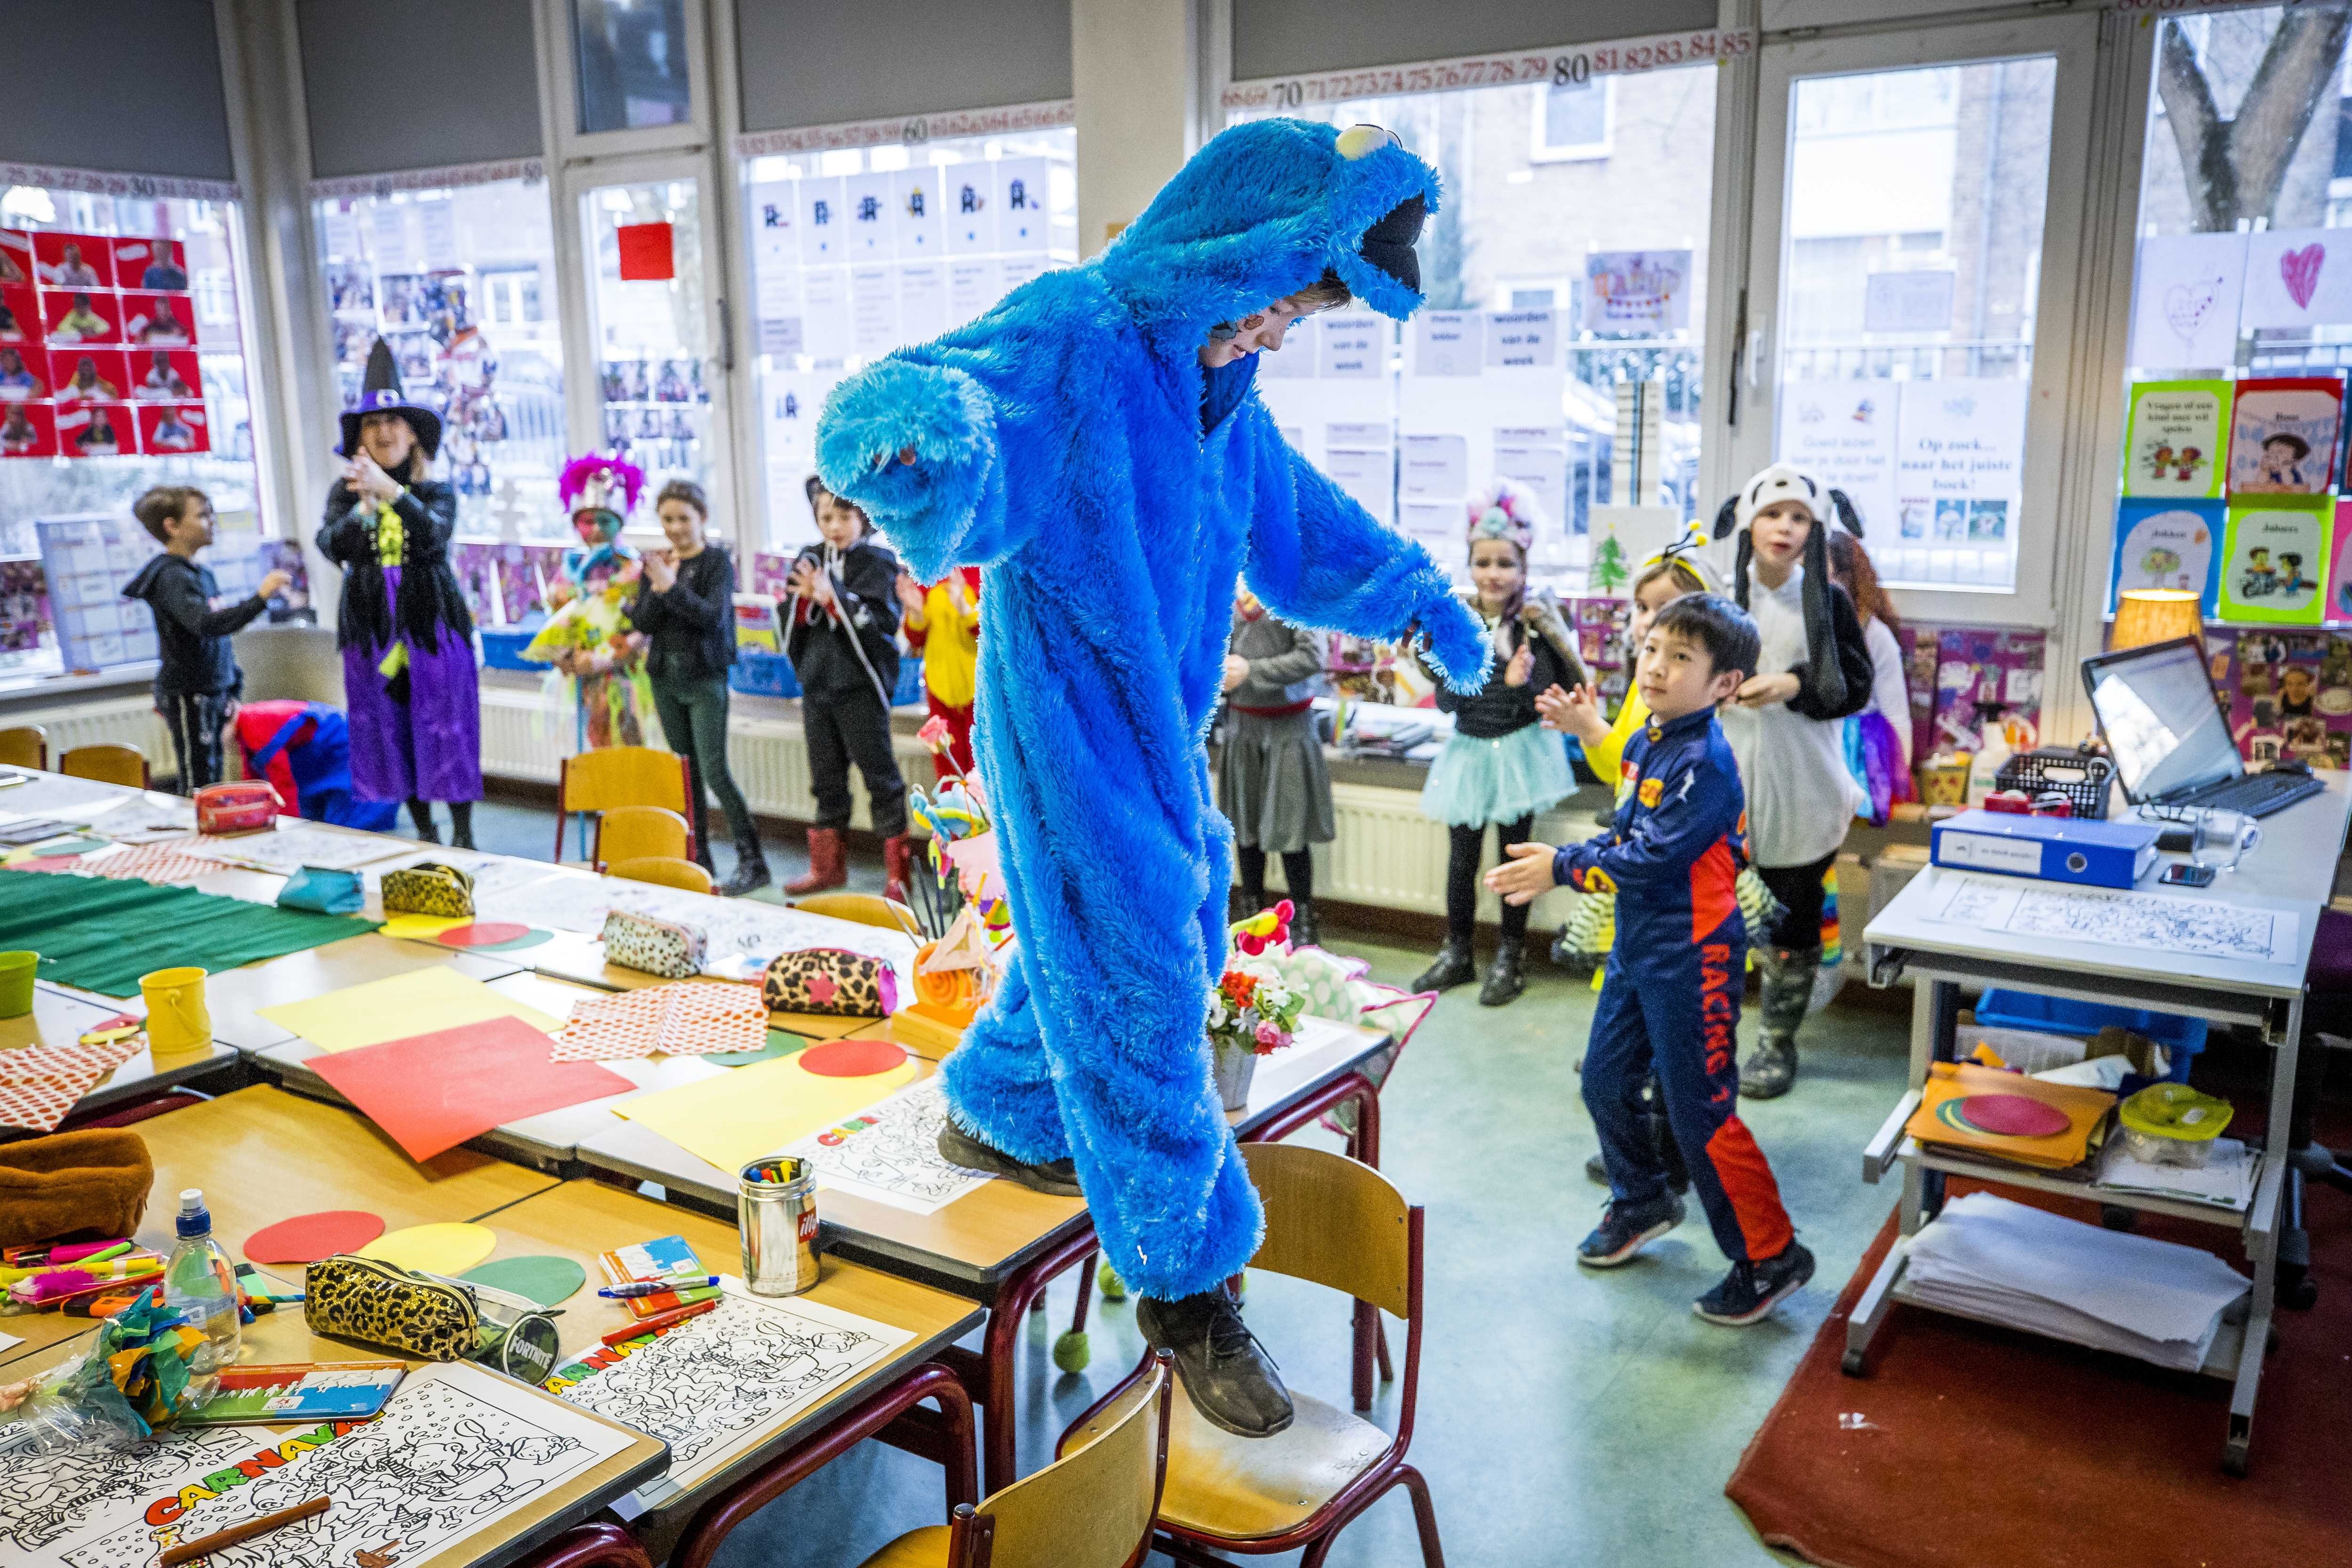 Los alumnos se disfrazan para celebrar el carnaval. Heerlen (Países Bajos). Los niños se disfrazan en el colegio para poder celebrar un pequeño carnaval en Heerlen, Países Bajos, el 12 de febrero de 2021.